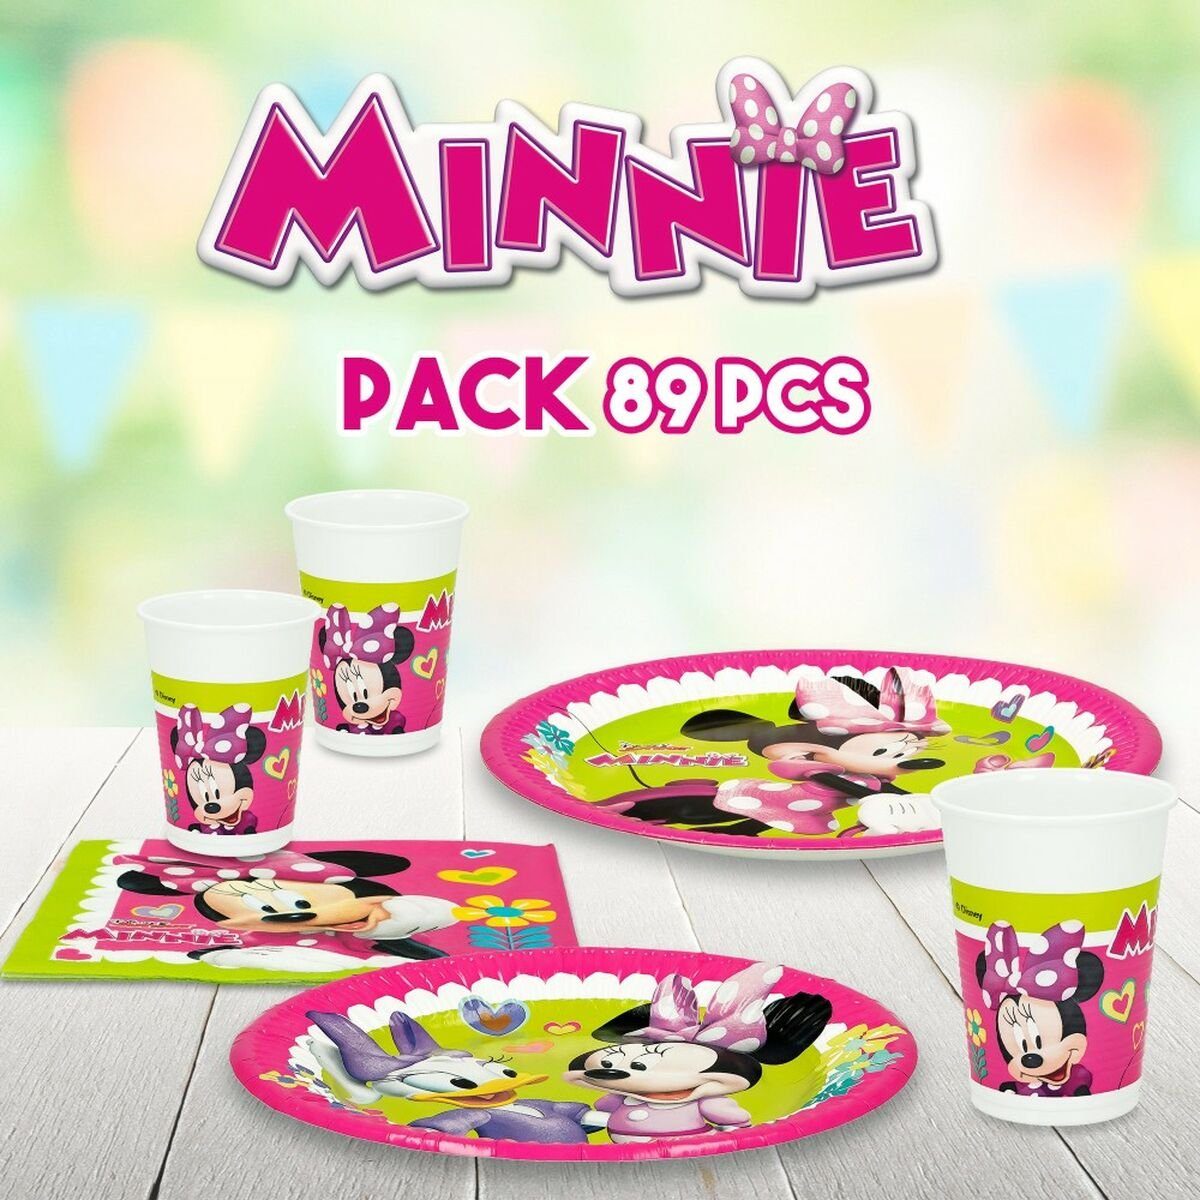 Partyartikel Happy Deluxe 16 Minnie Set Disney Stücke Mouse Minnie Mouse Einweggeschirr-Set 89